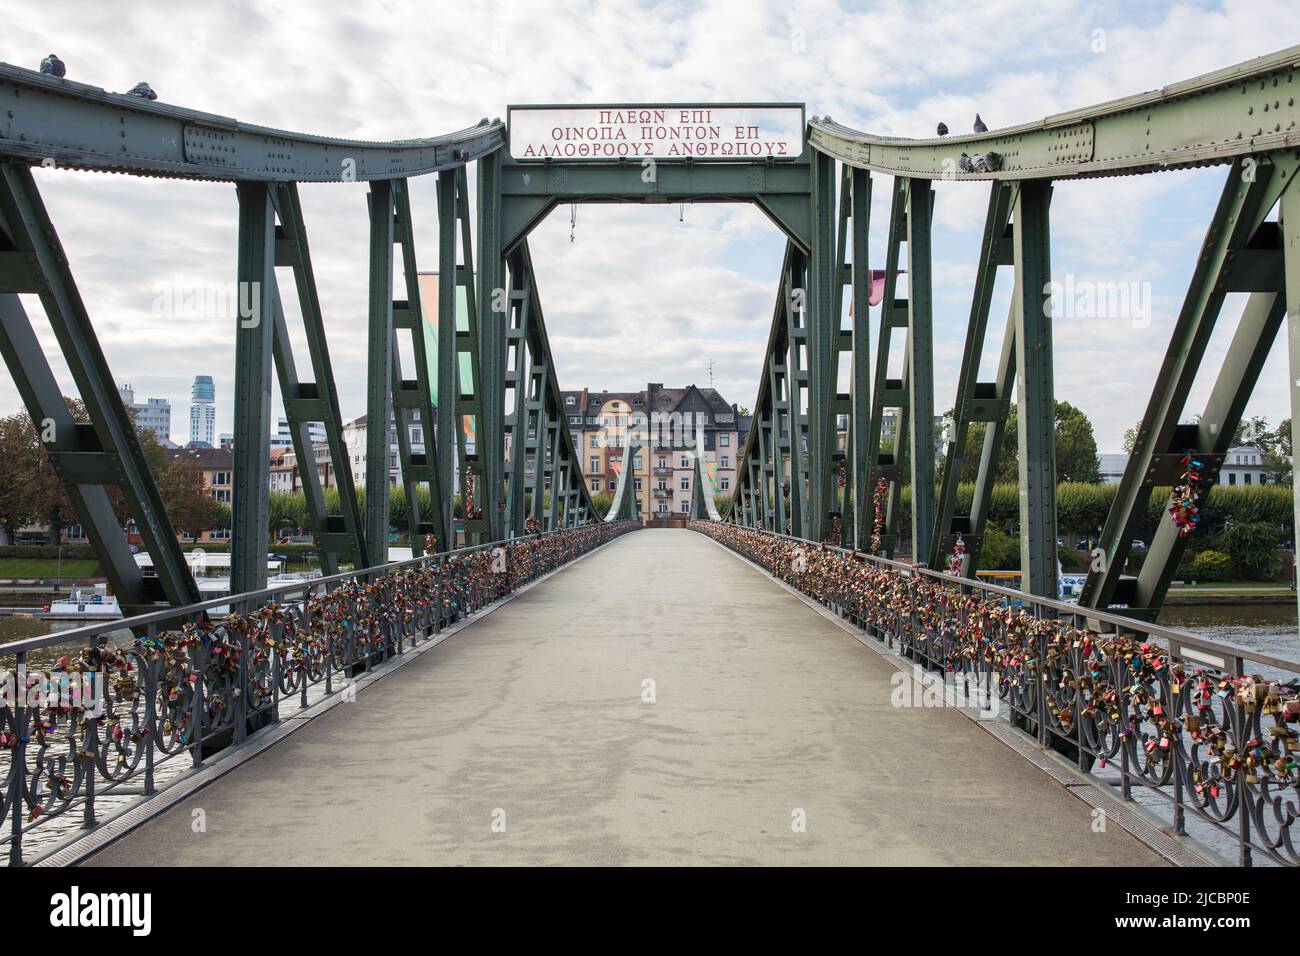 Frankfurt am Main, Alemania - 31 de agosto de 2021: Situado en el puente más famoso de Frankfurt: El 'Eisener Seg' (puente peatonal de hierro). No hay gente. Foto de stock